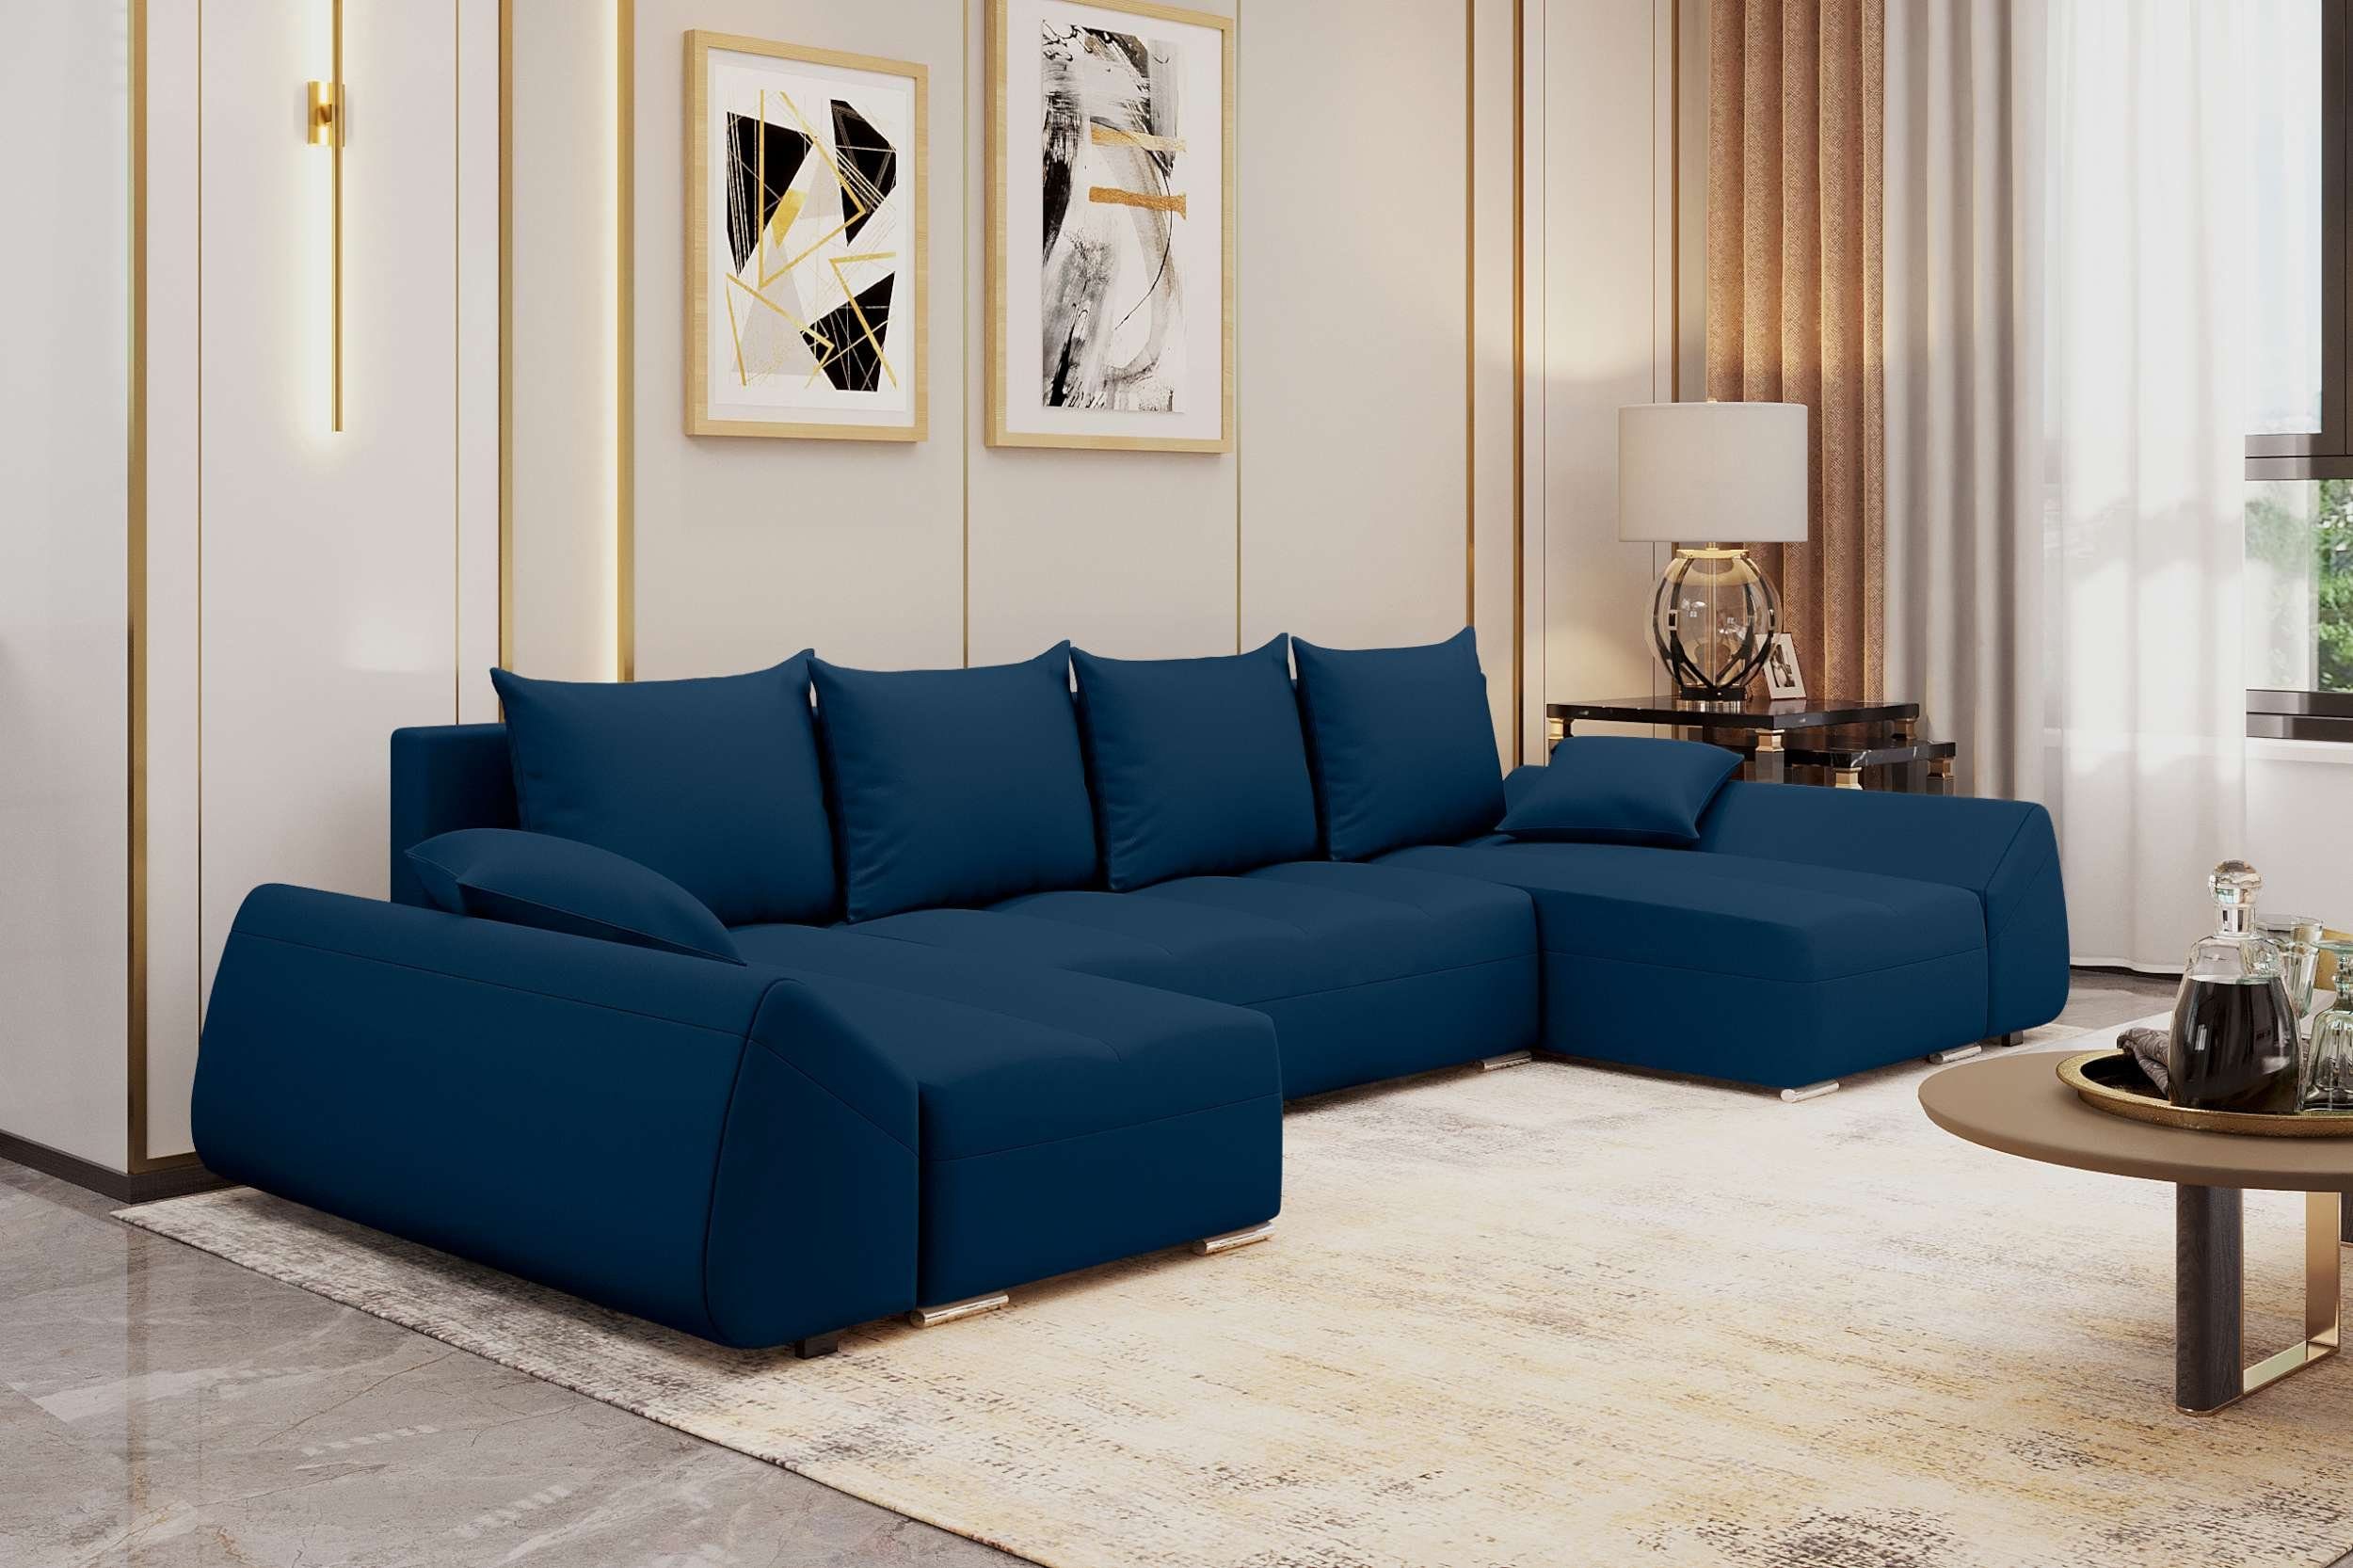 Stylefy Wohnlandschaft Madeira, U-Form, Design Sitzkomfort, mit mit Sofa, Eckcouch, Bettkasten, Bettfunktion, Modern